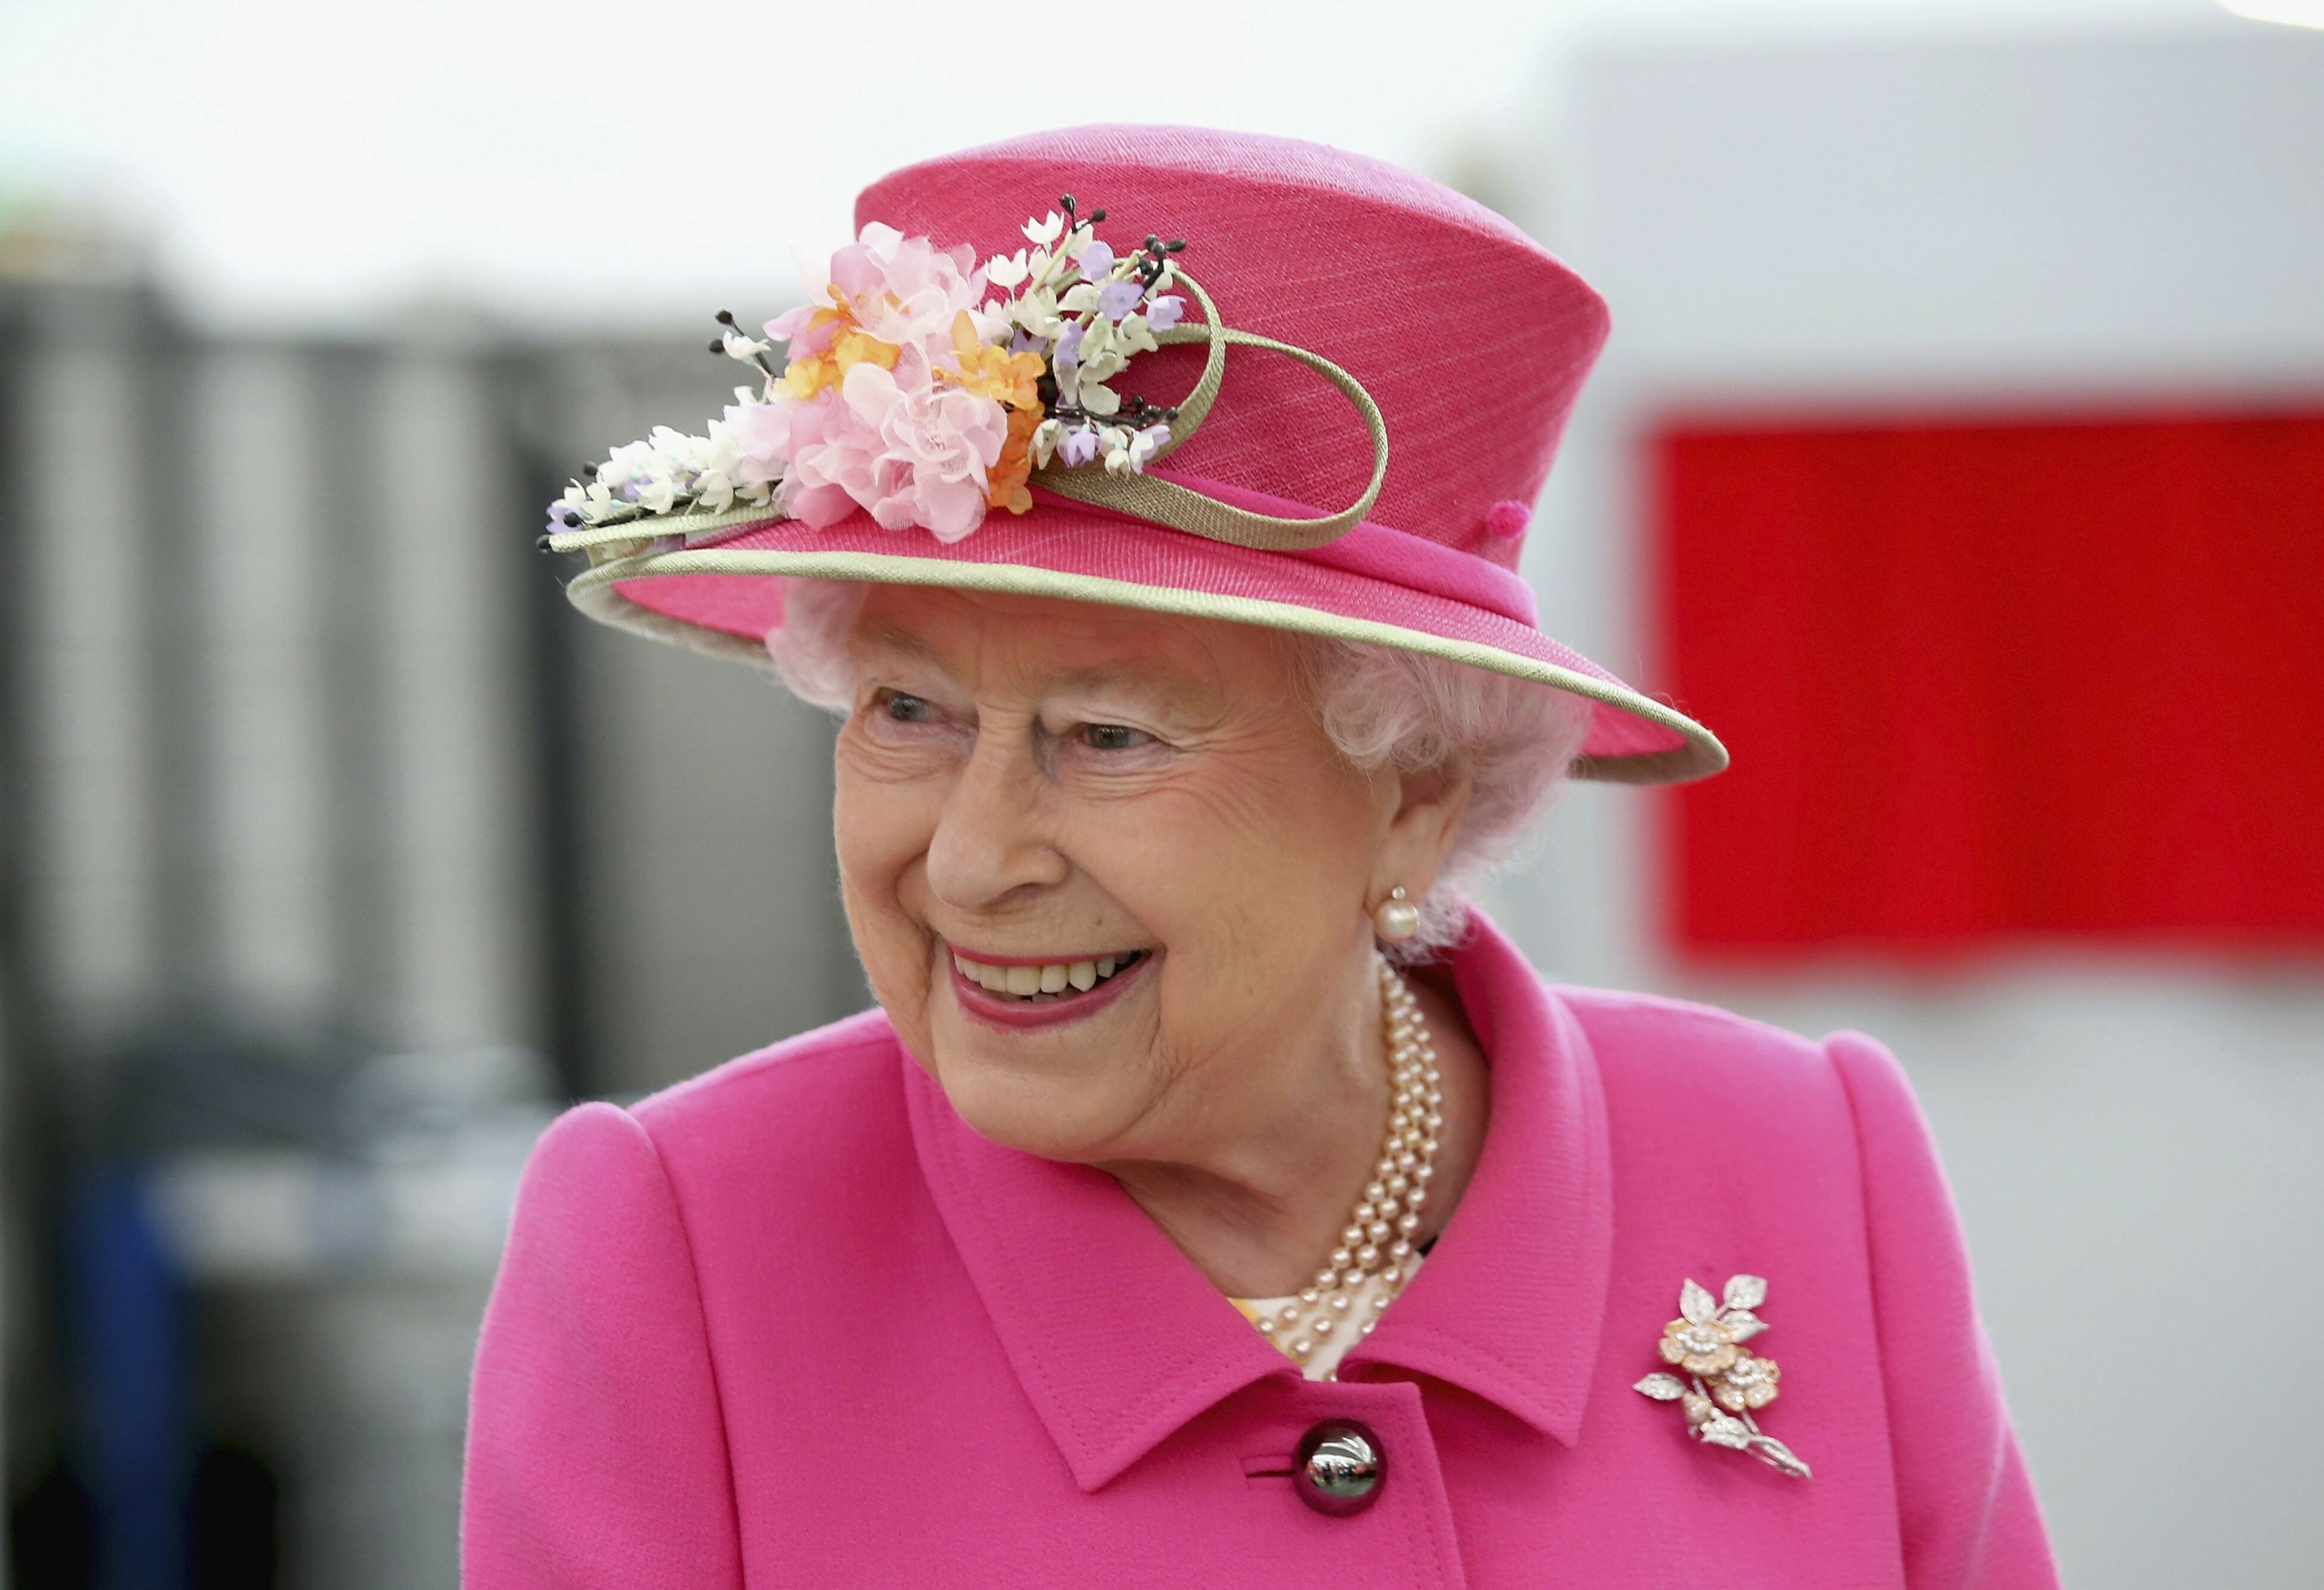 الملكة إليزابيث تعود للعمل في يونيو المقبل يوم عيد ميلادها 